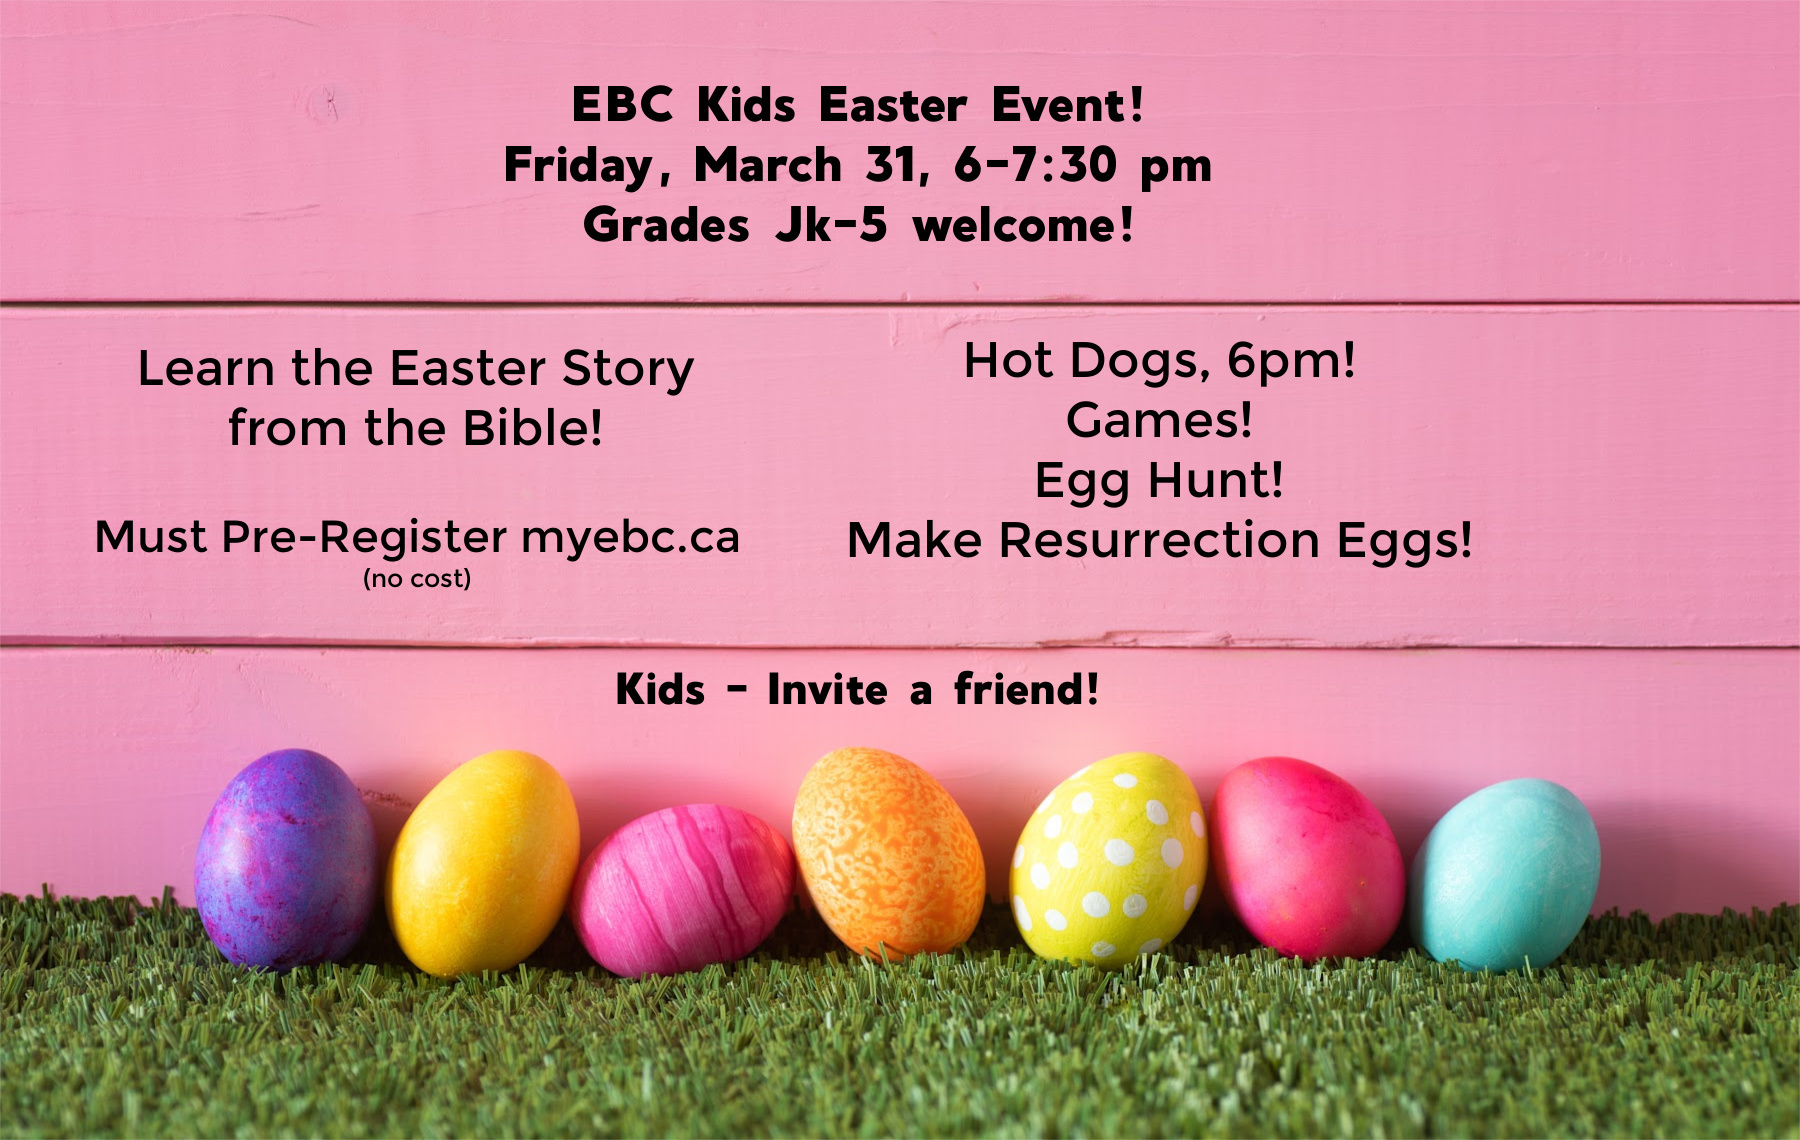 Easter Event full details